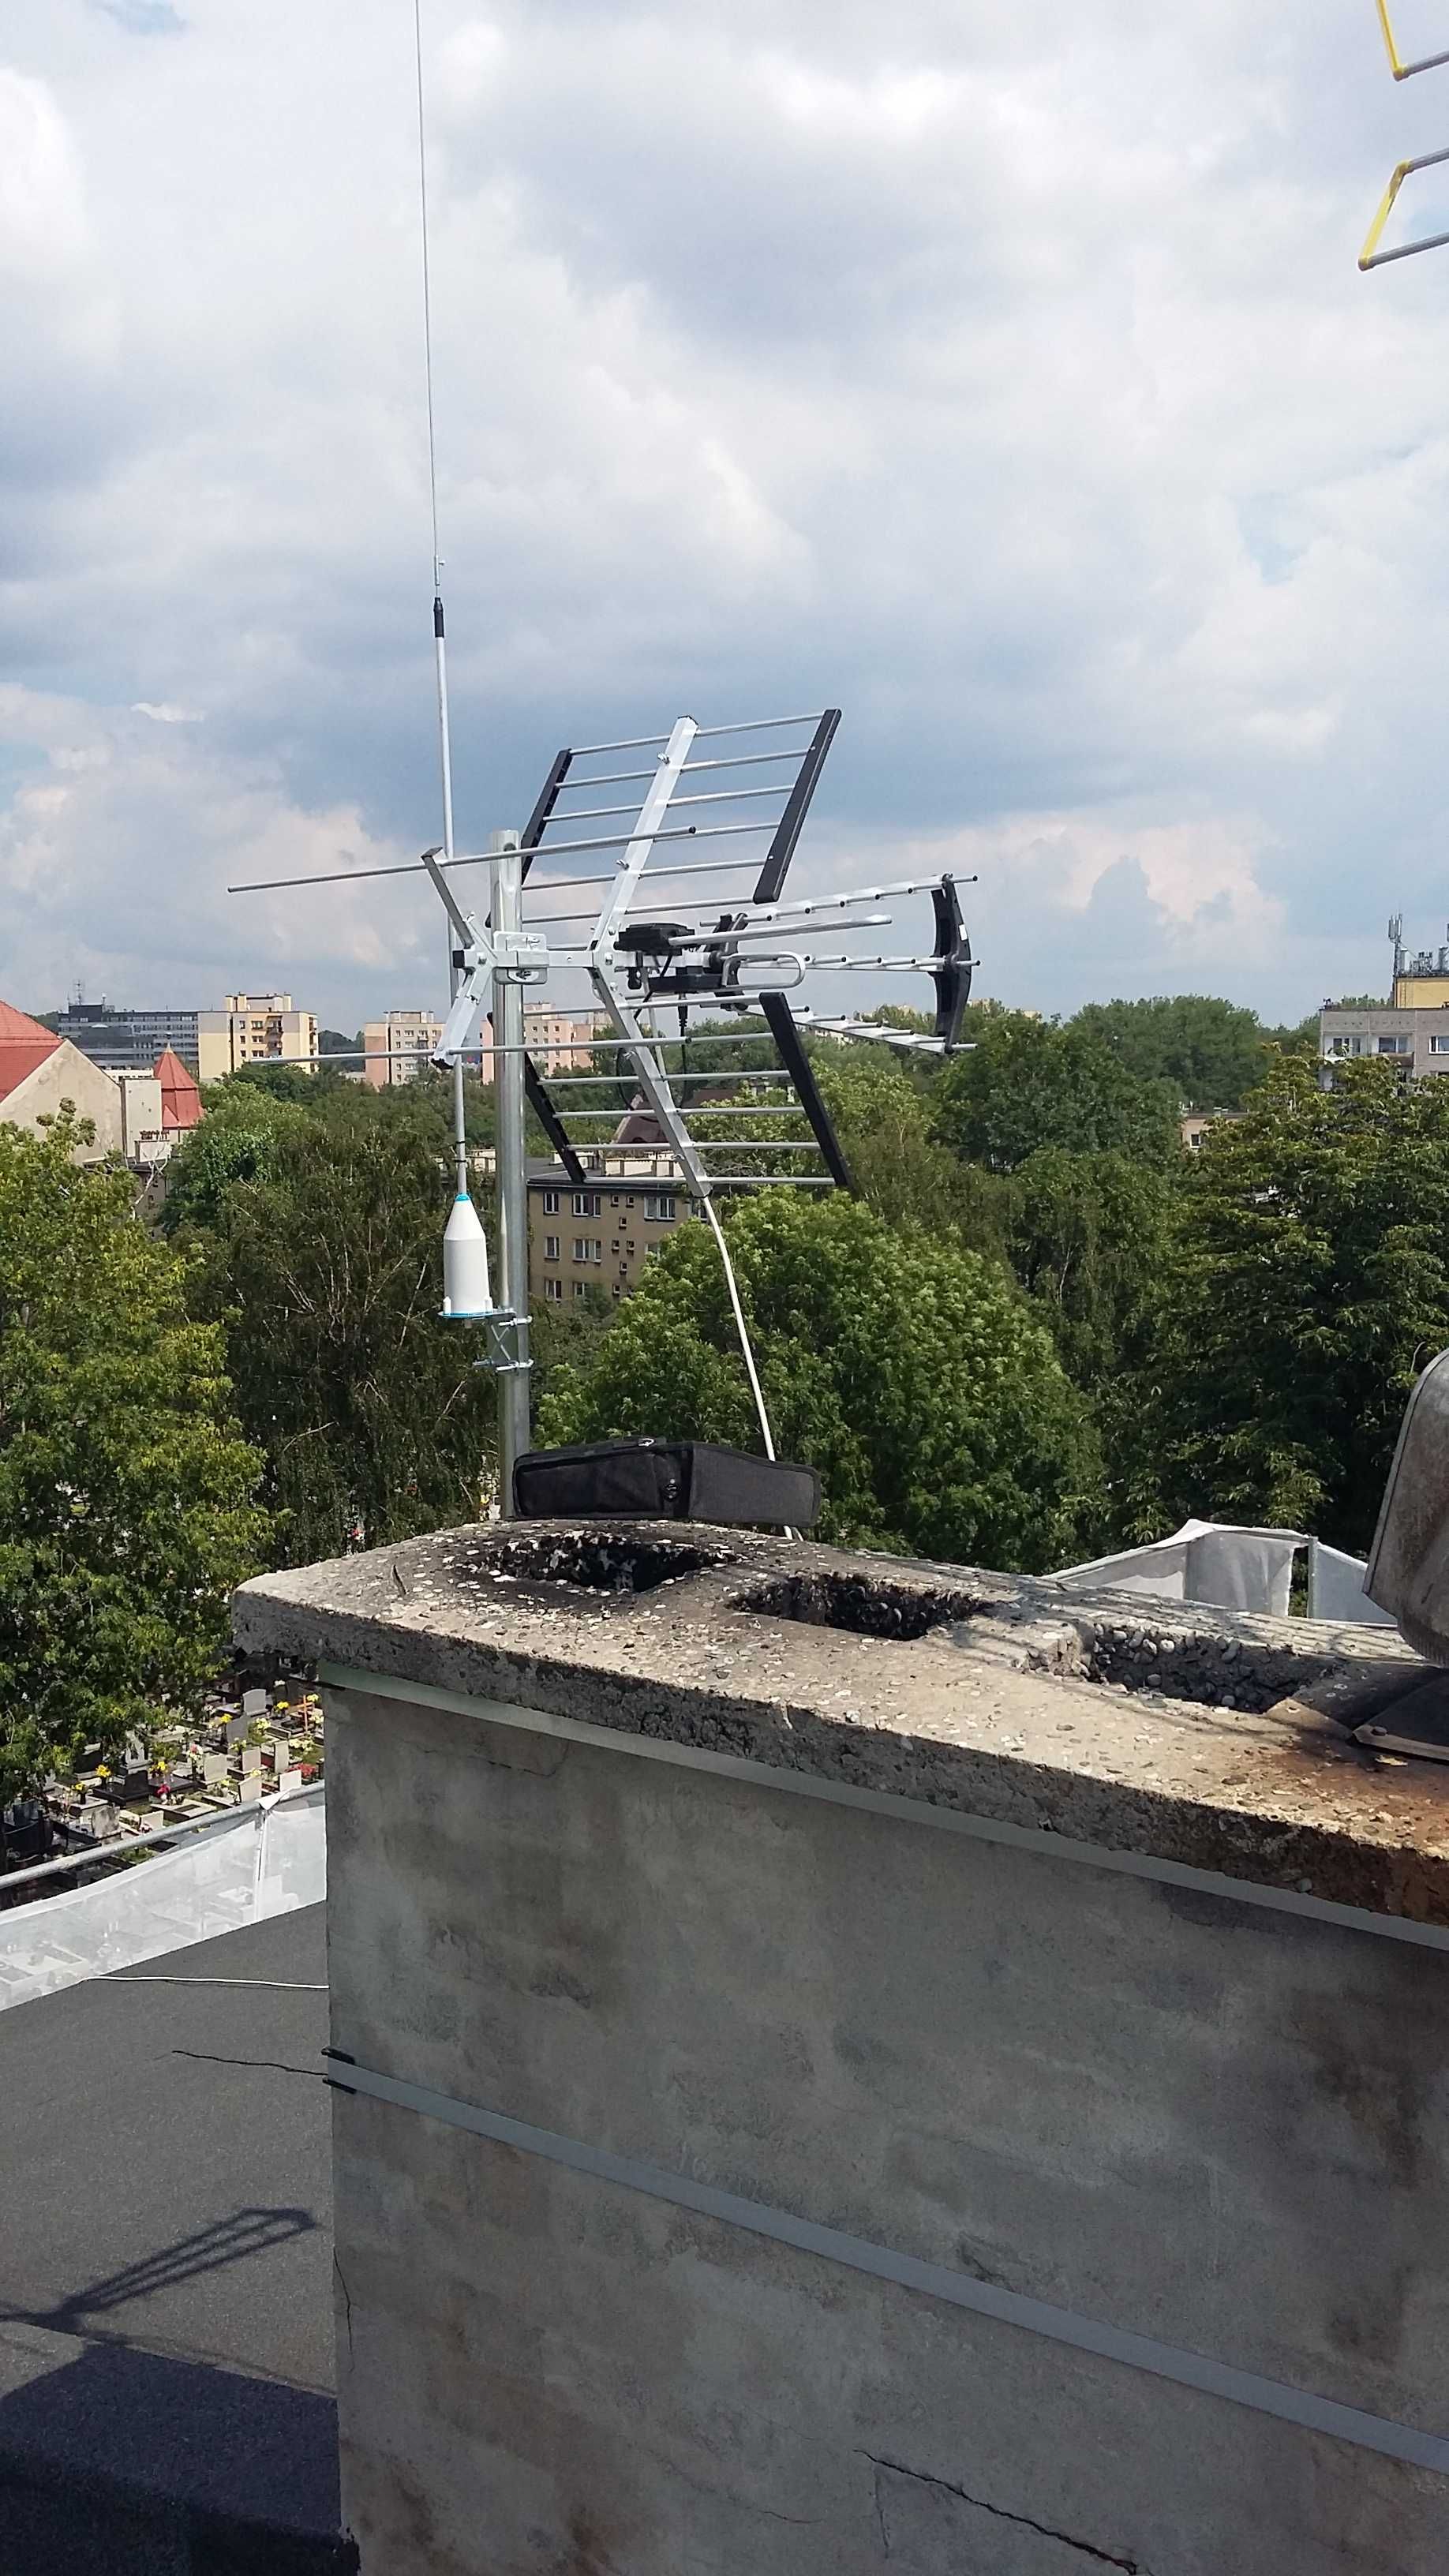 Anteny montaż anten ustawianie serwis Sosnowiec Będzin Czeladź okolice